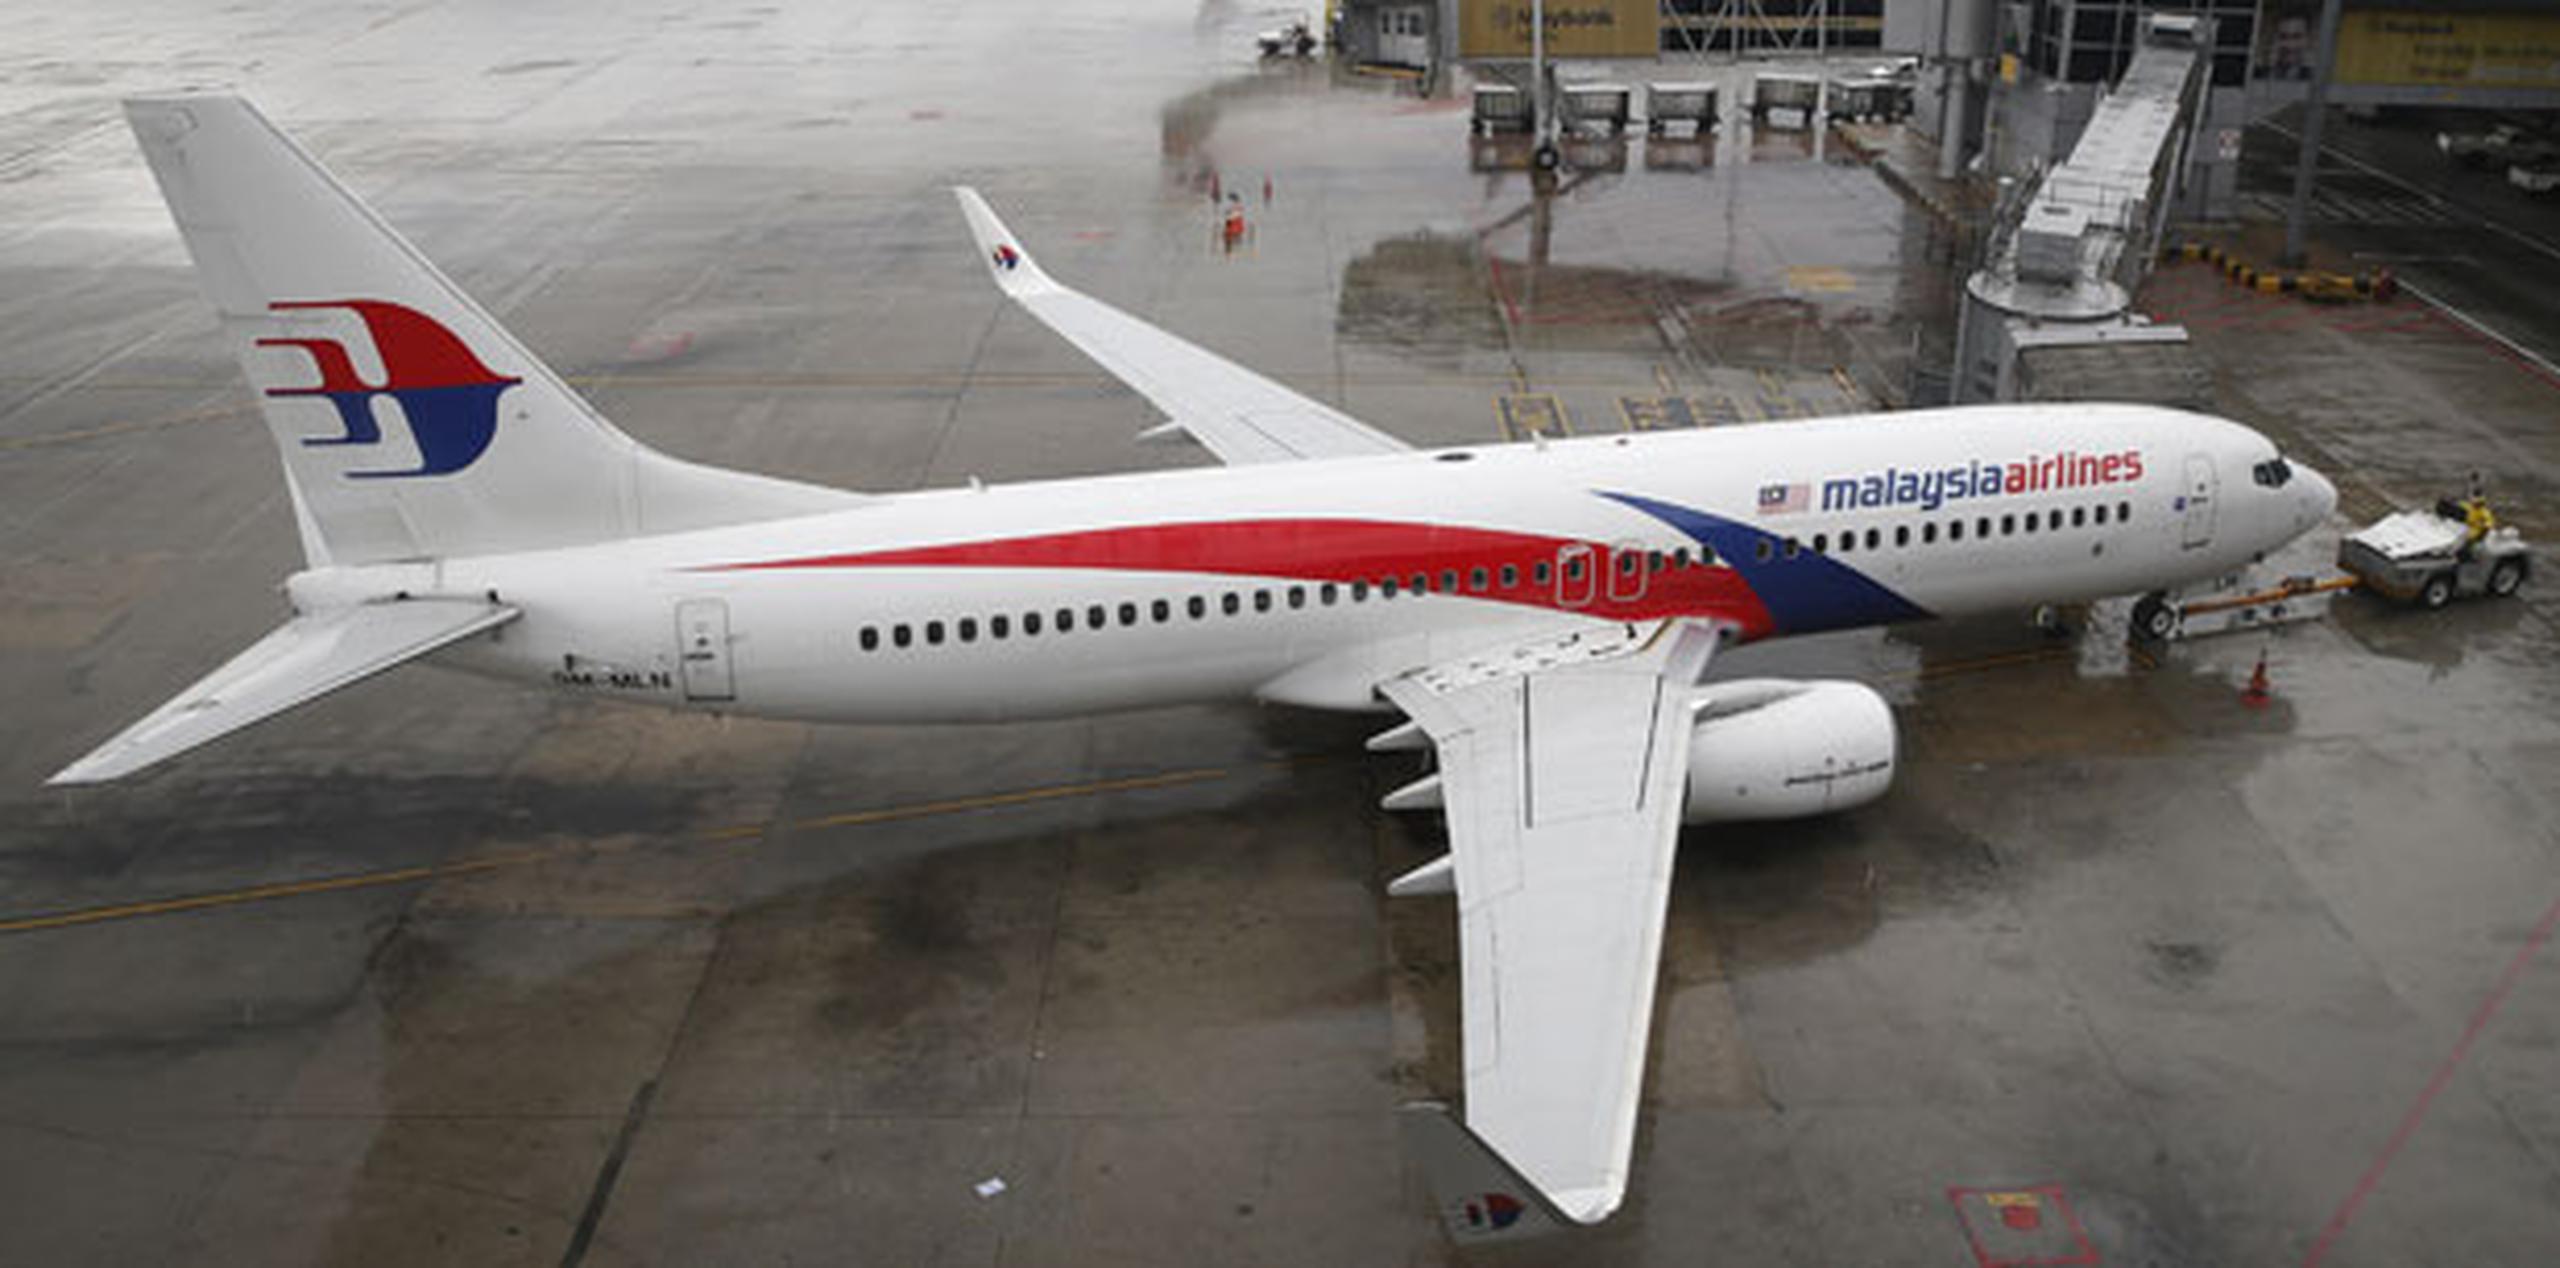 Malaysia Airlines llevaba varios ejercicios con pérdidas cuando dos accidentes aéreos la pusieron en una delicada situación en 2014. (Archivo)